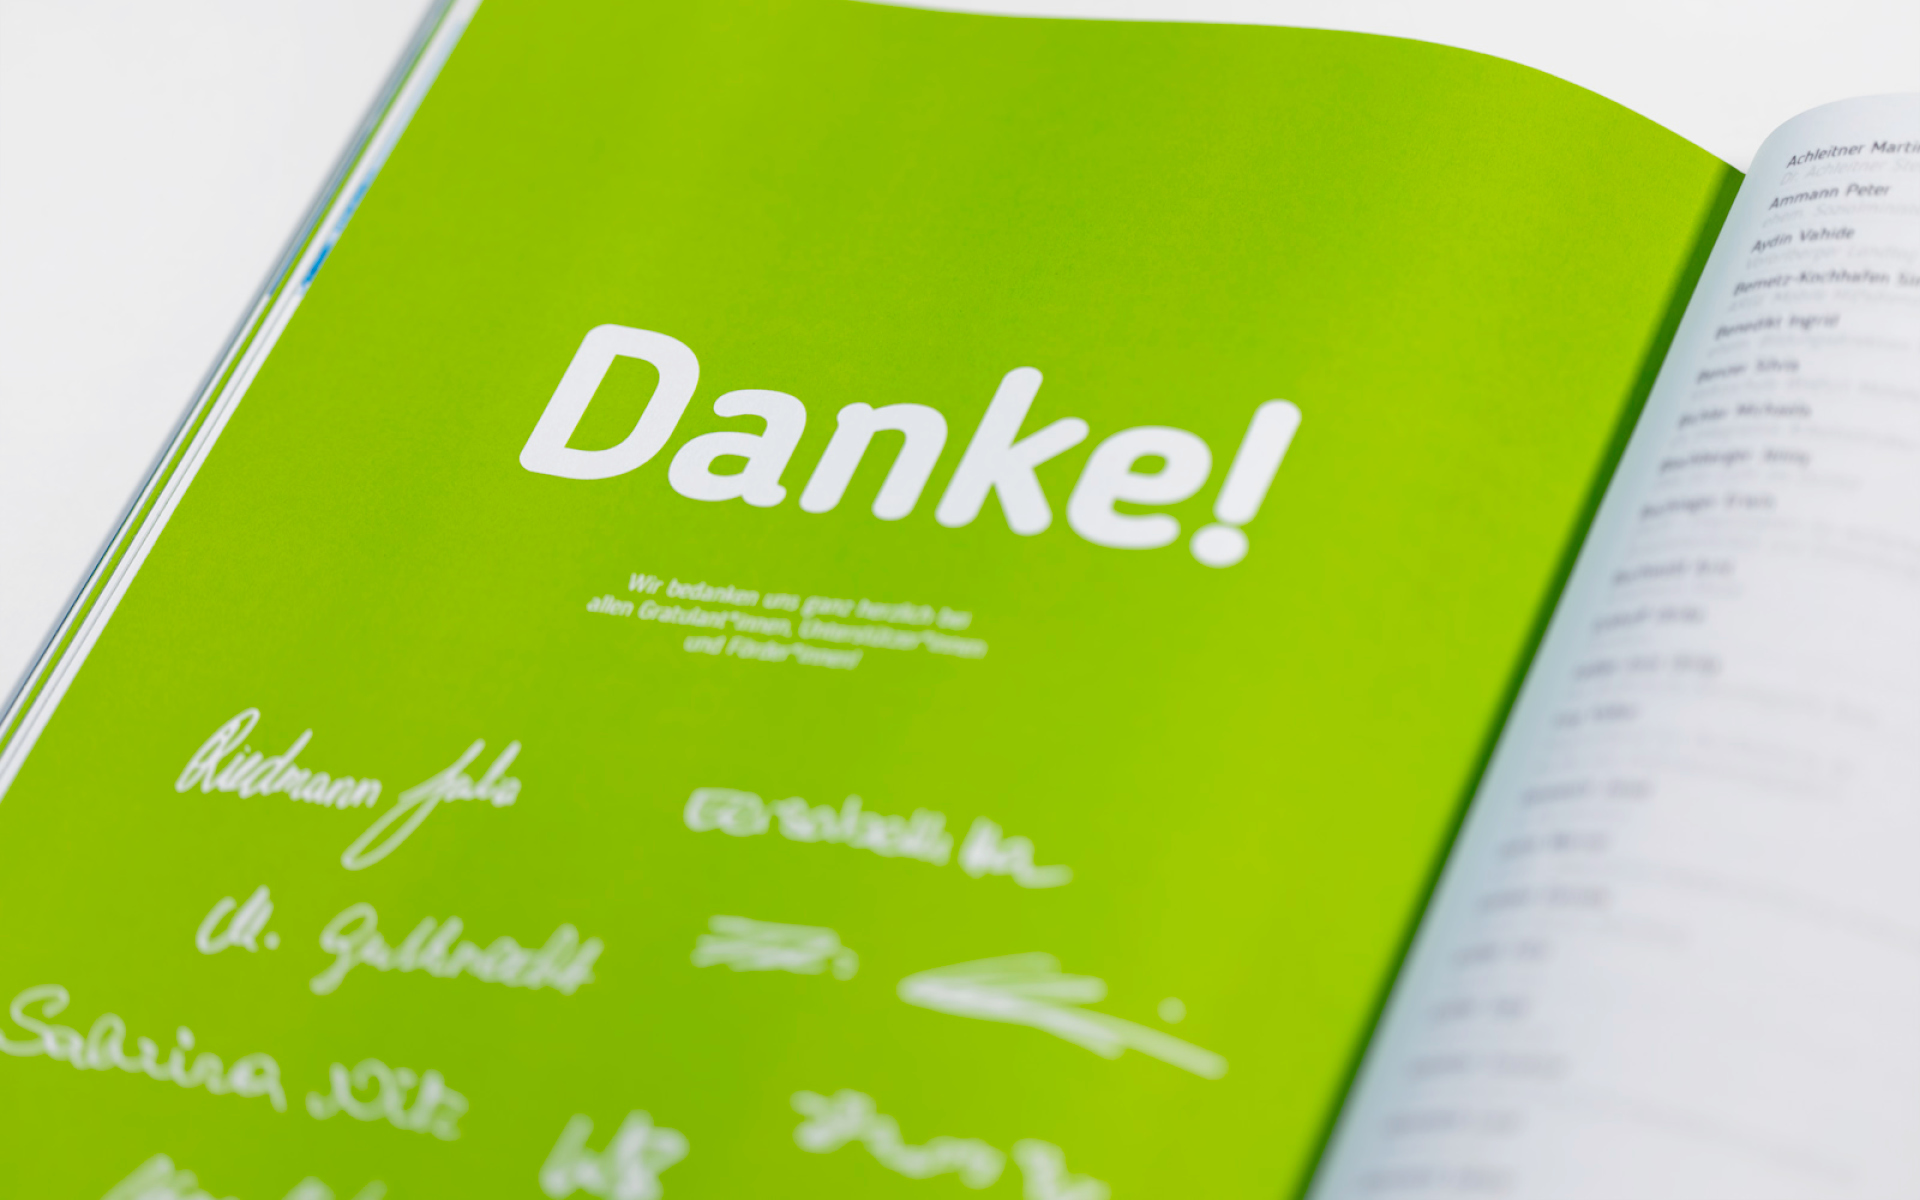 Gratulationsbuch für die Servicestelle Persönliche Assistenz Vorarlberg von er Designagentur look! design